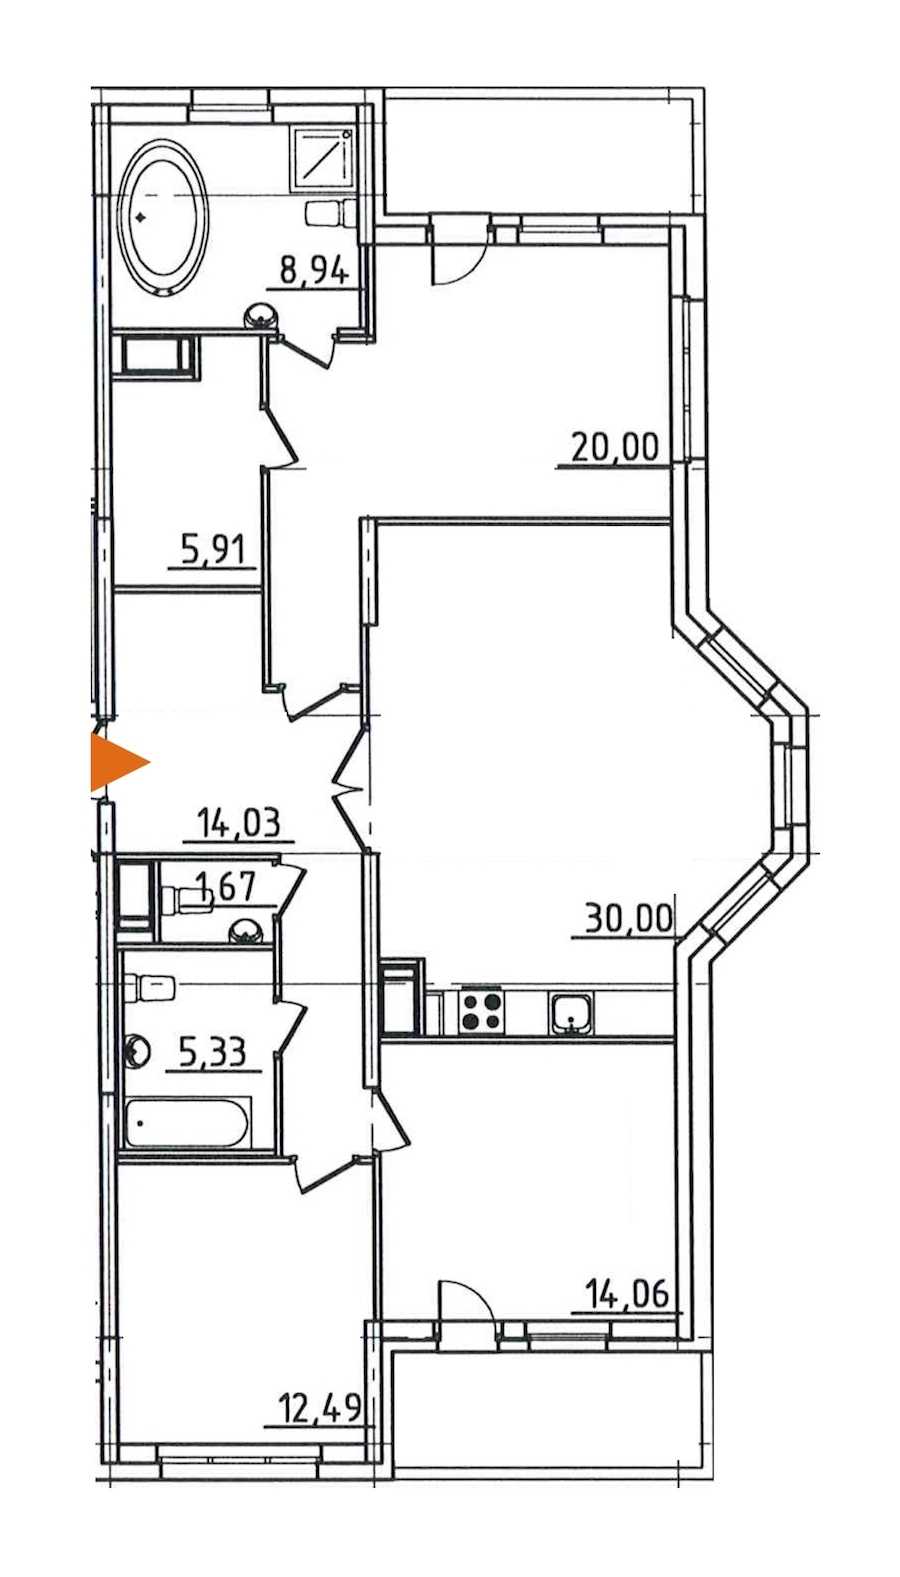 Трехкомнатная квартира в : площадь 118.36 м2 , этаж: 3 – купить в Санкт-Петербурге